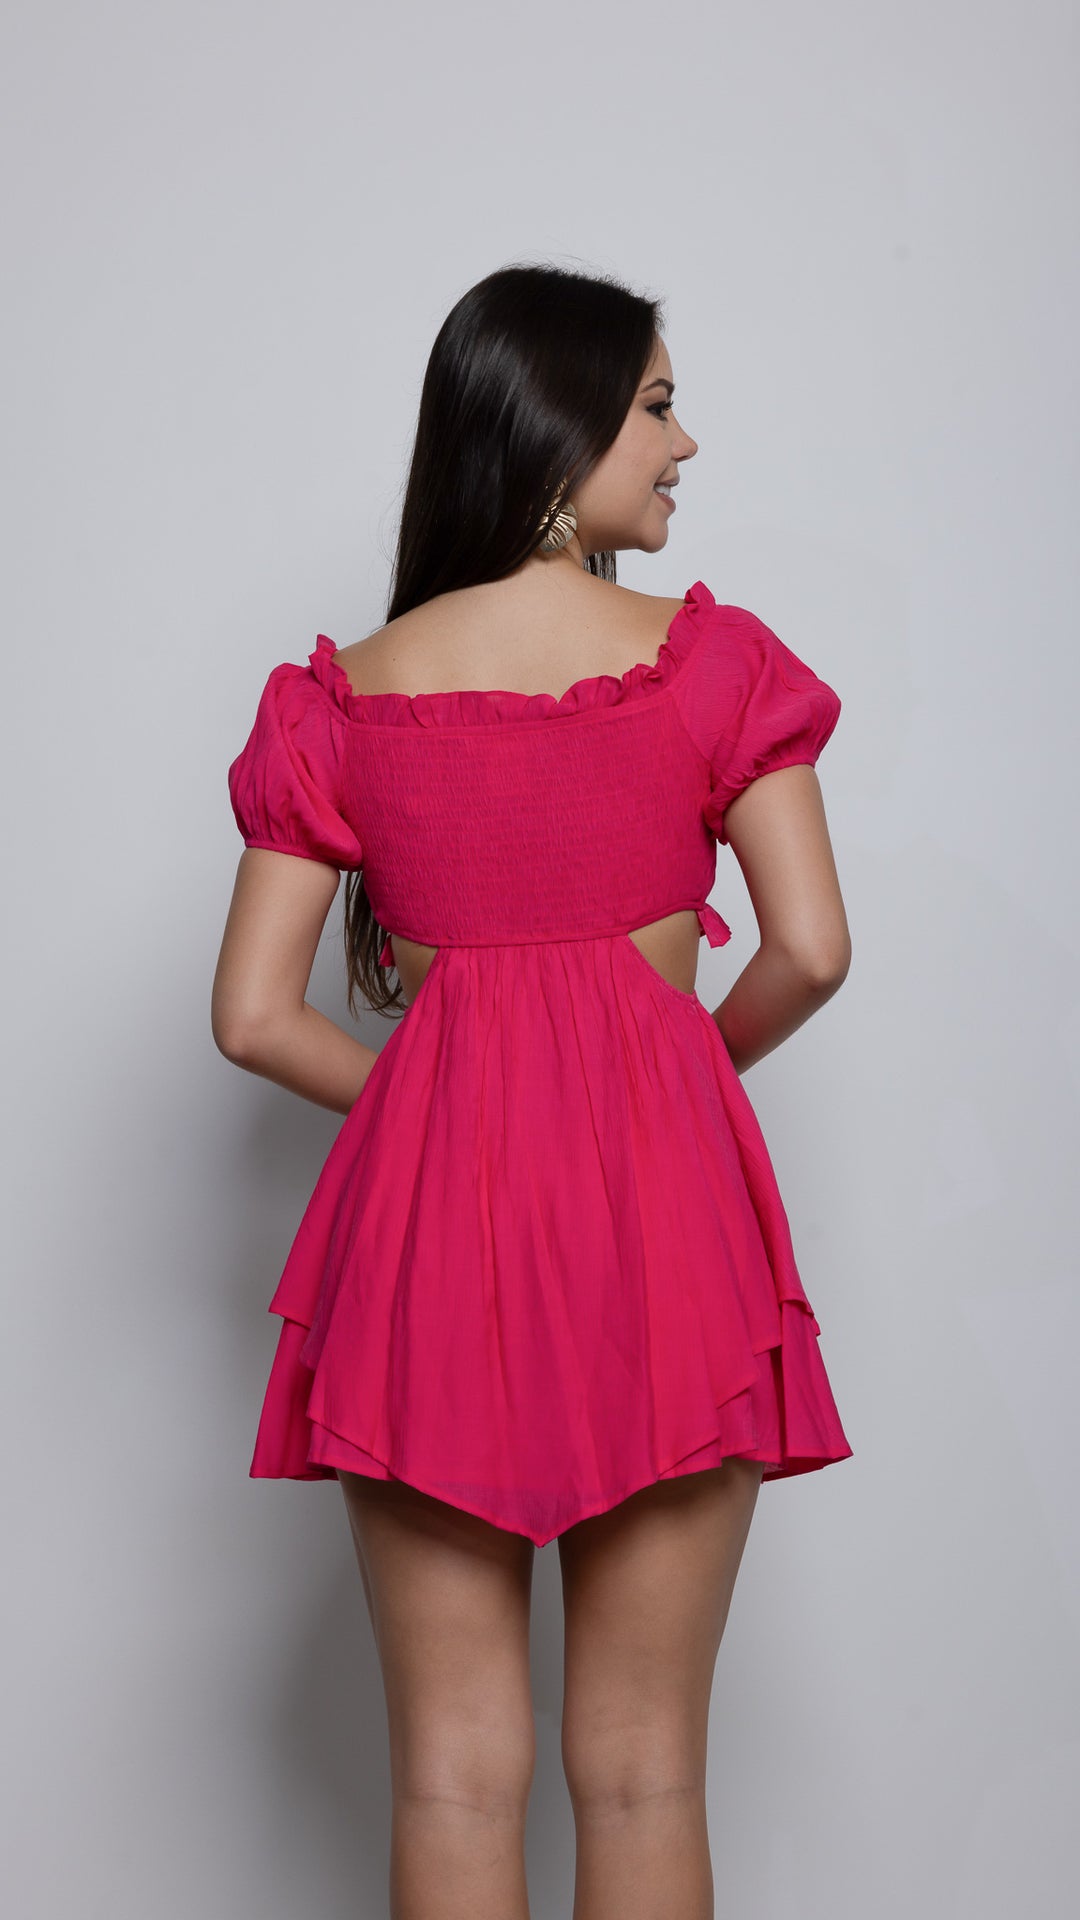 Clari Mini dress in Hot Pink